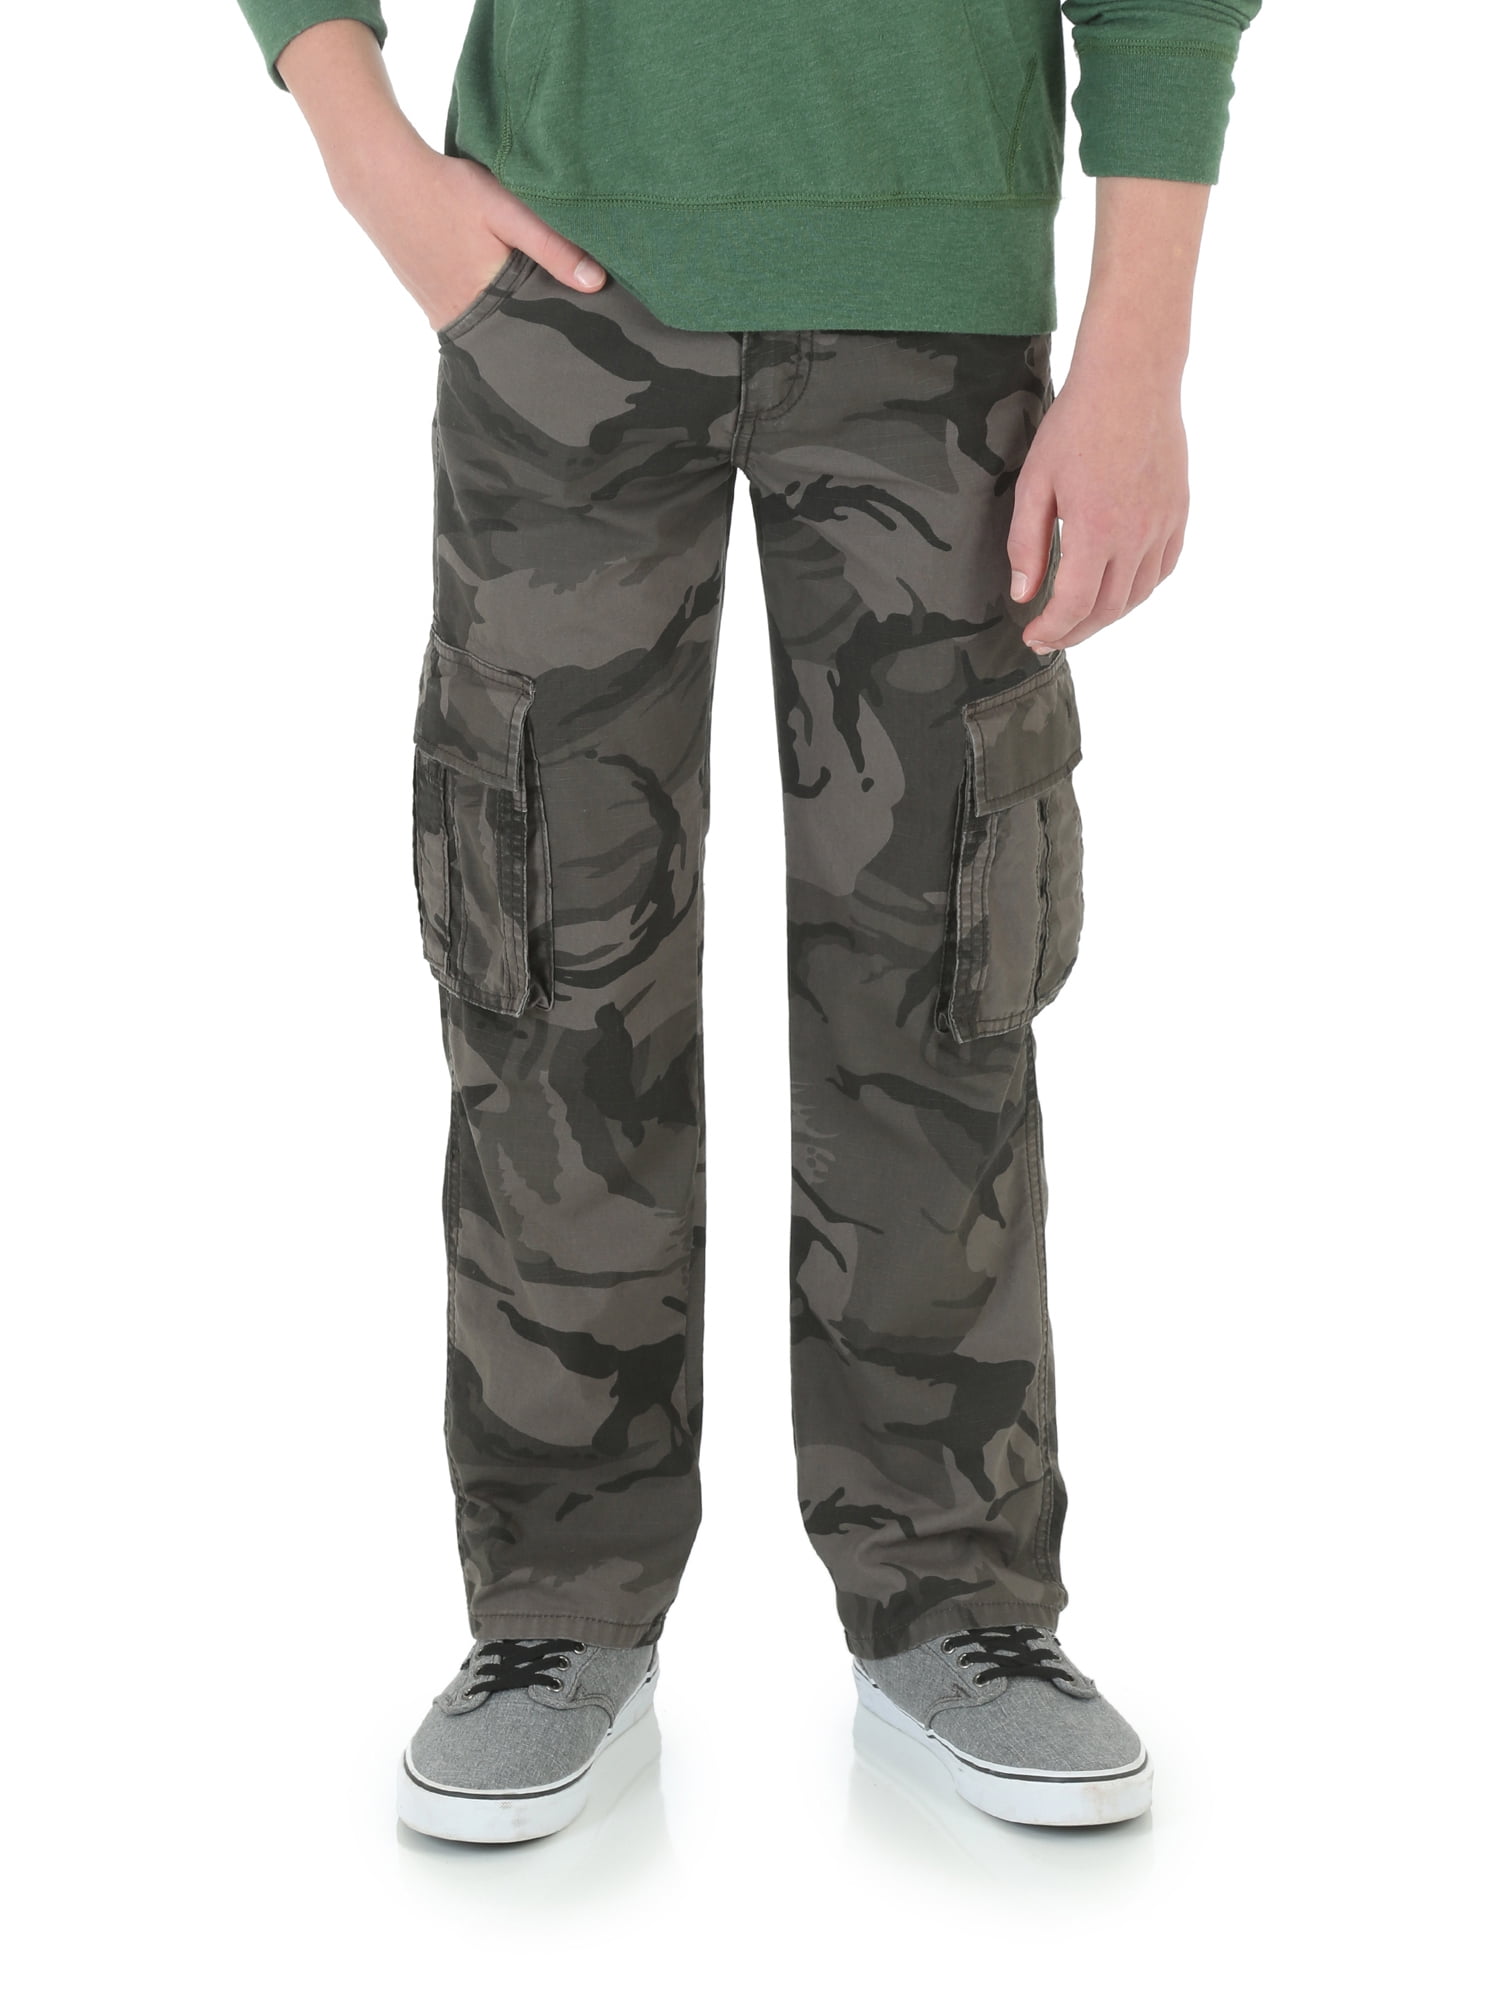 Wrangler Boys 4-16 Lined Cargo Pants - Walmart.com